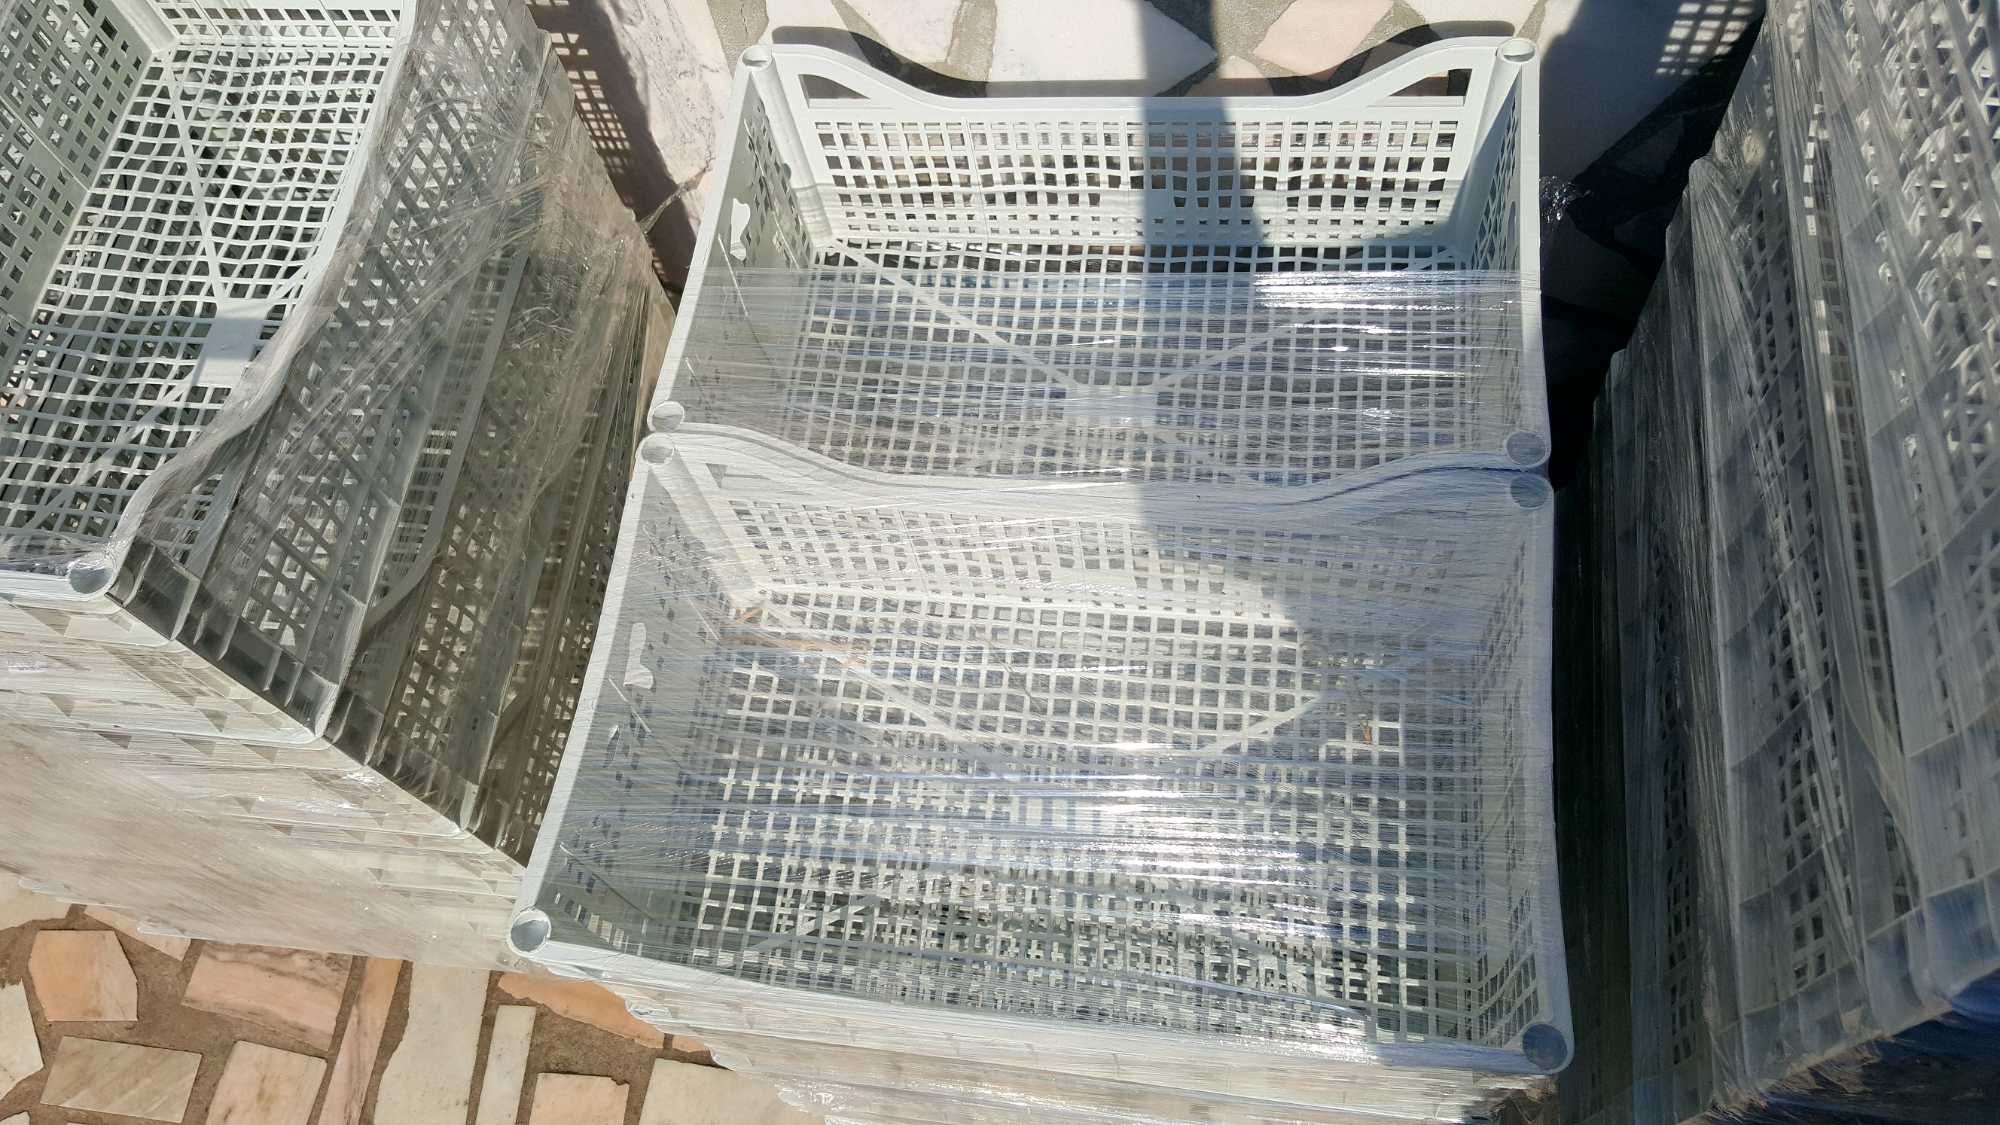 Lazi Plastic ladite cutii depozitare legume fructe diverse 5lei/buc.